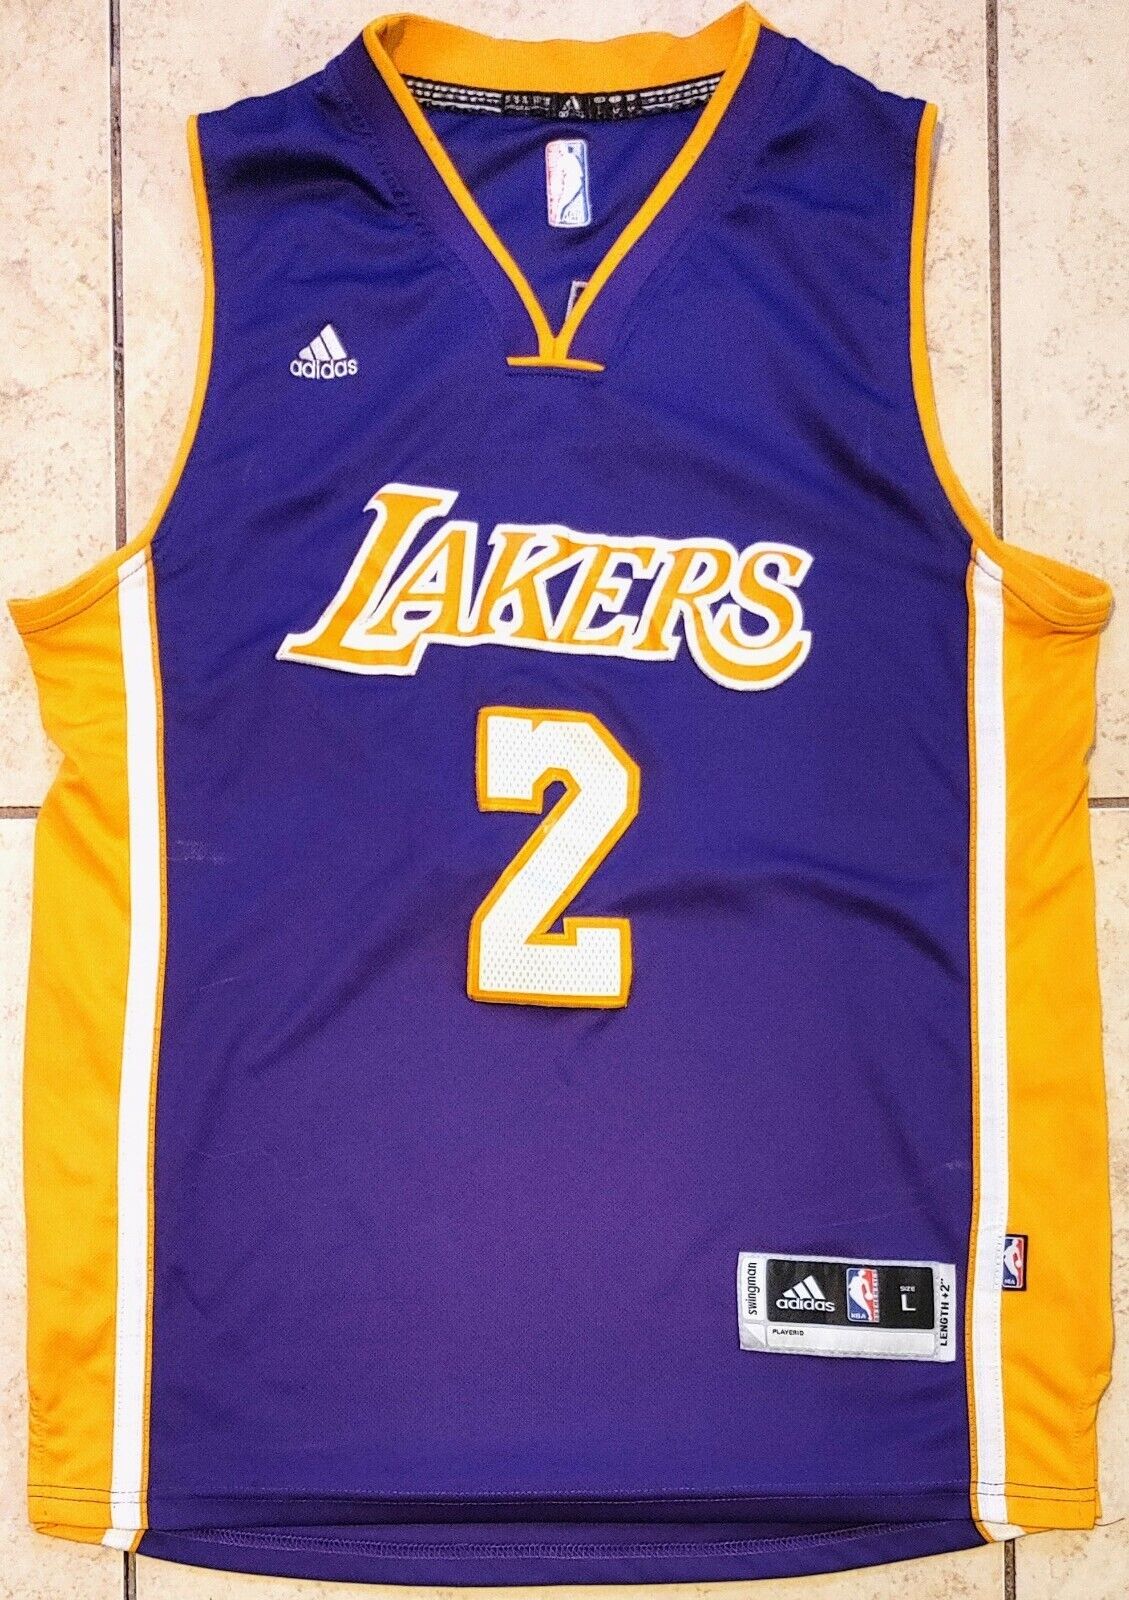 Lakers Los Ángeles NBA Lonzo Ball #2 Swingman Size L | eBay